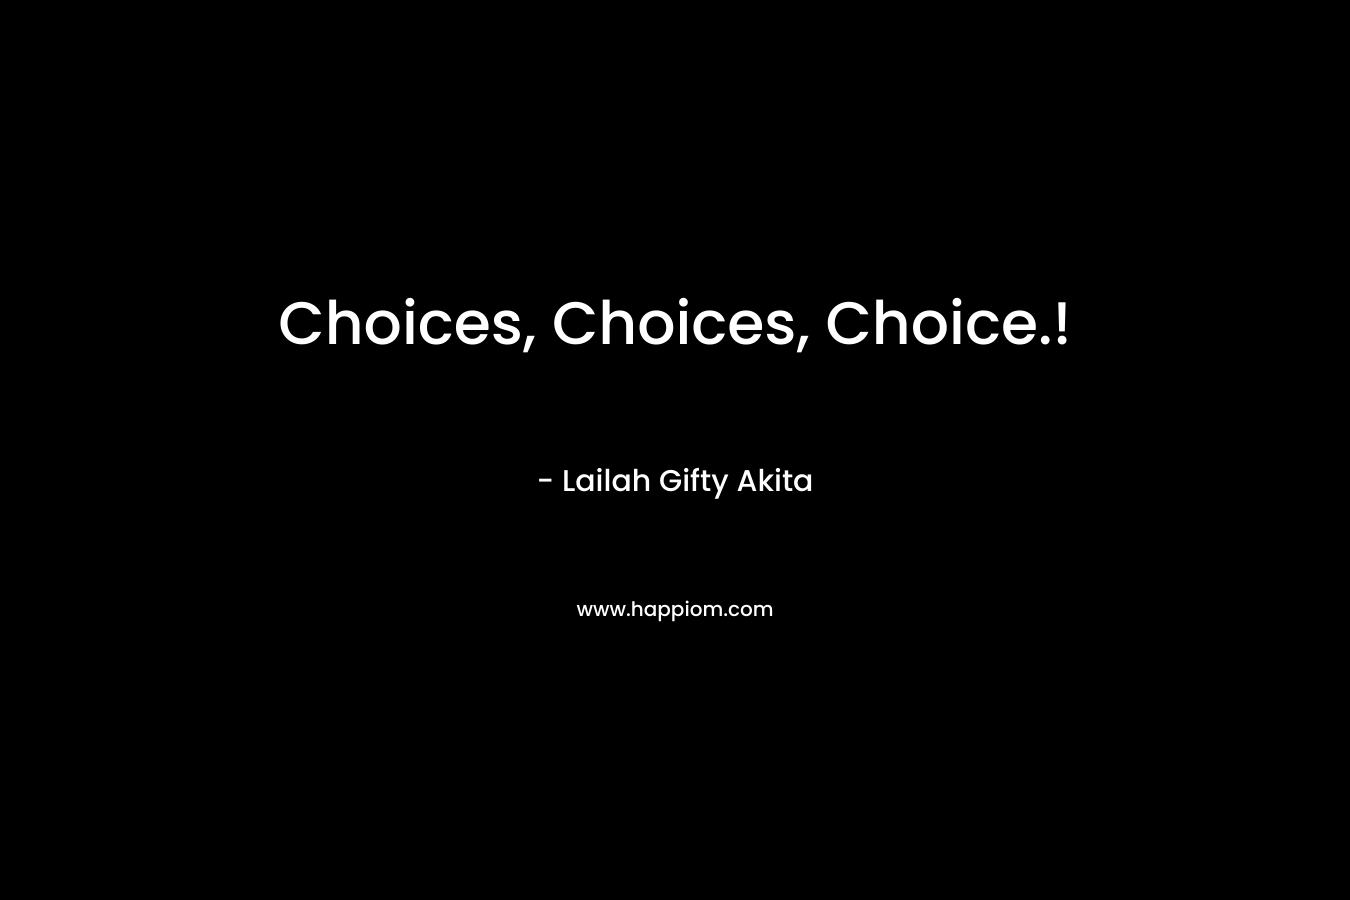 Choices, Choices, Choice.!